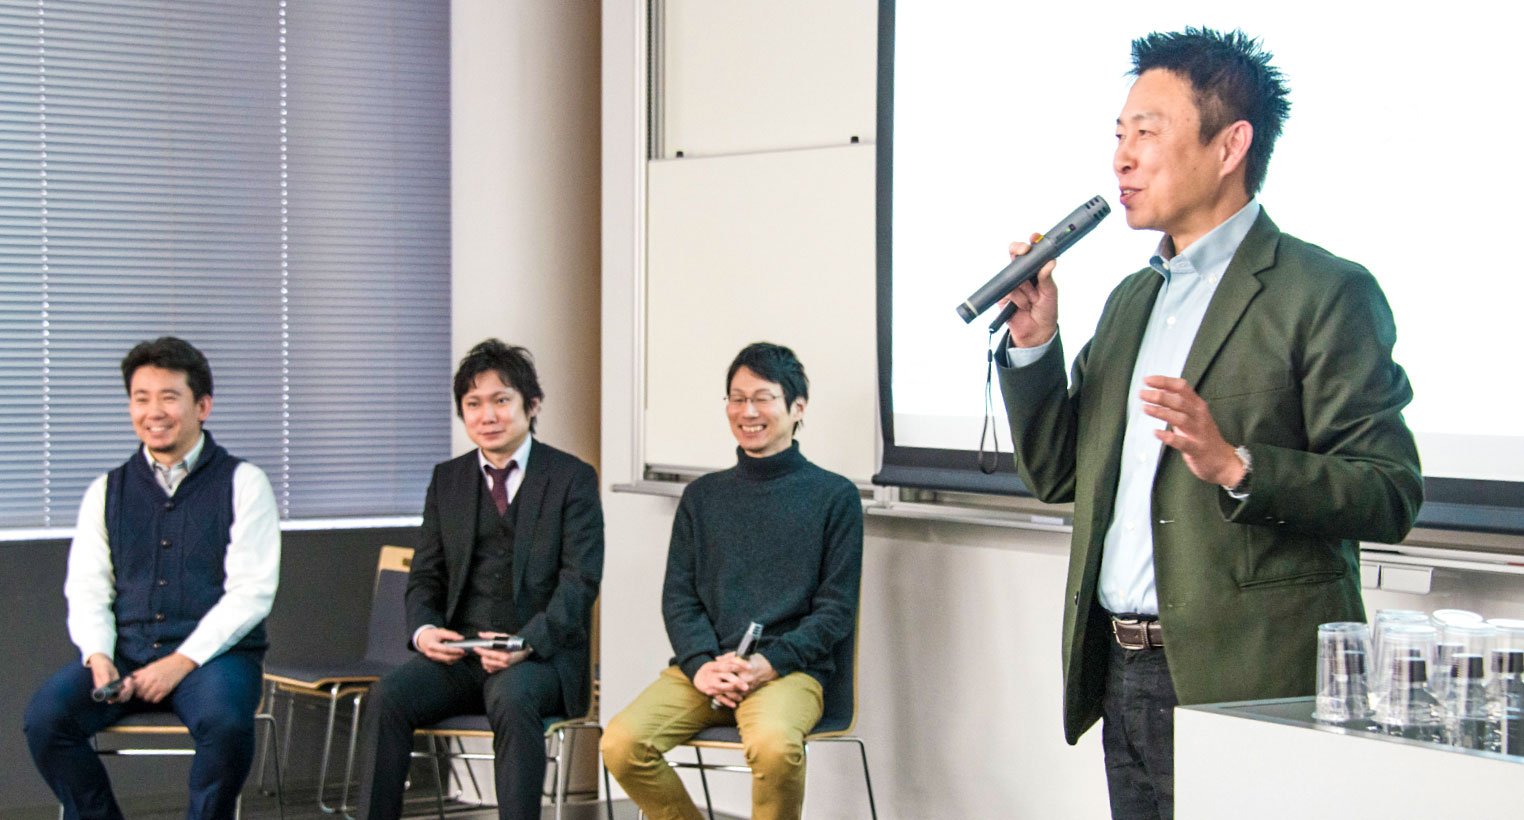 早稲田大学データ科学総合研究教育センター第9回シンポジウムを開催しました